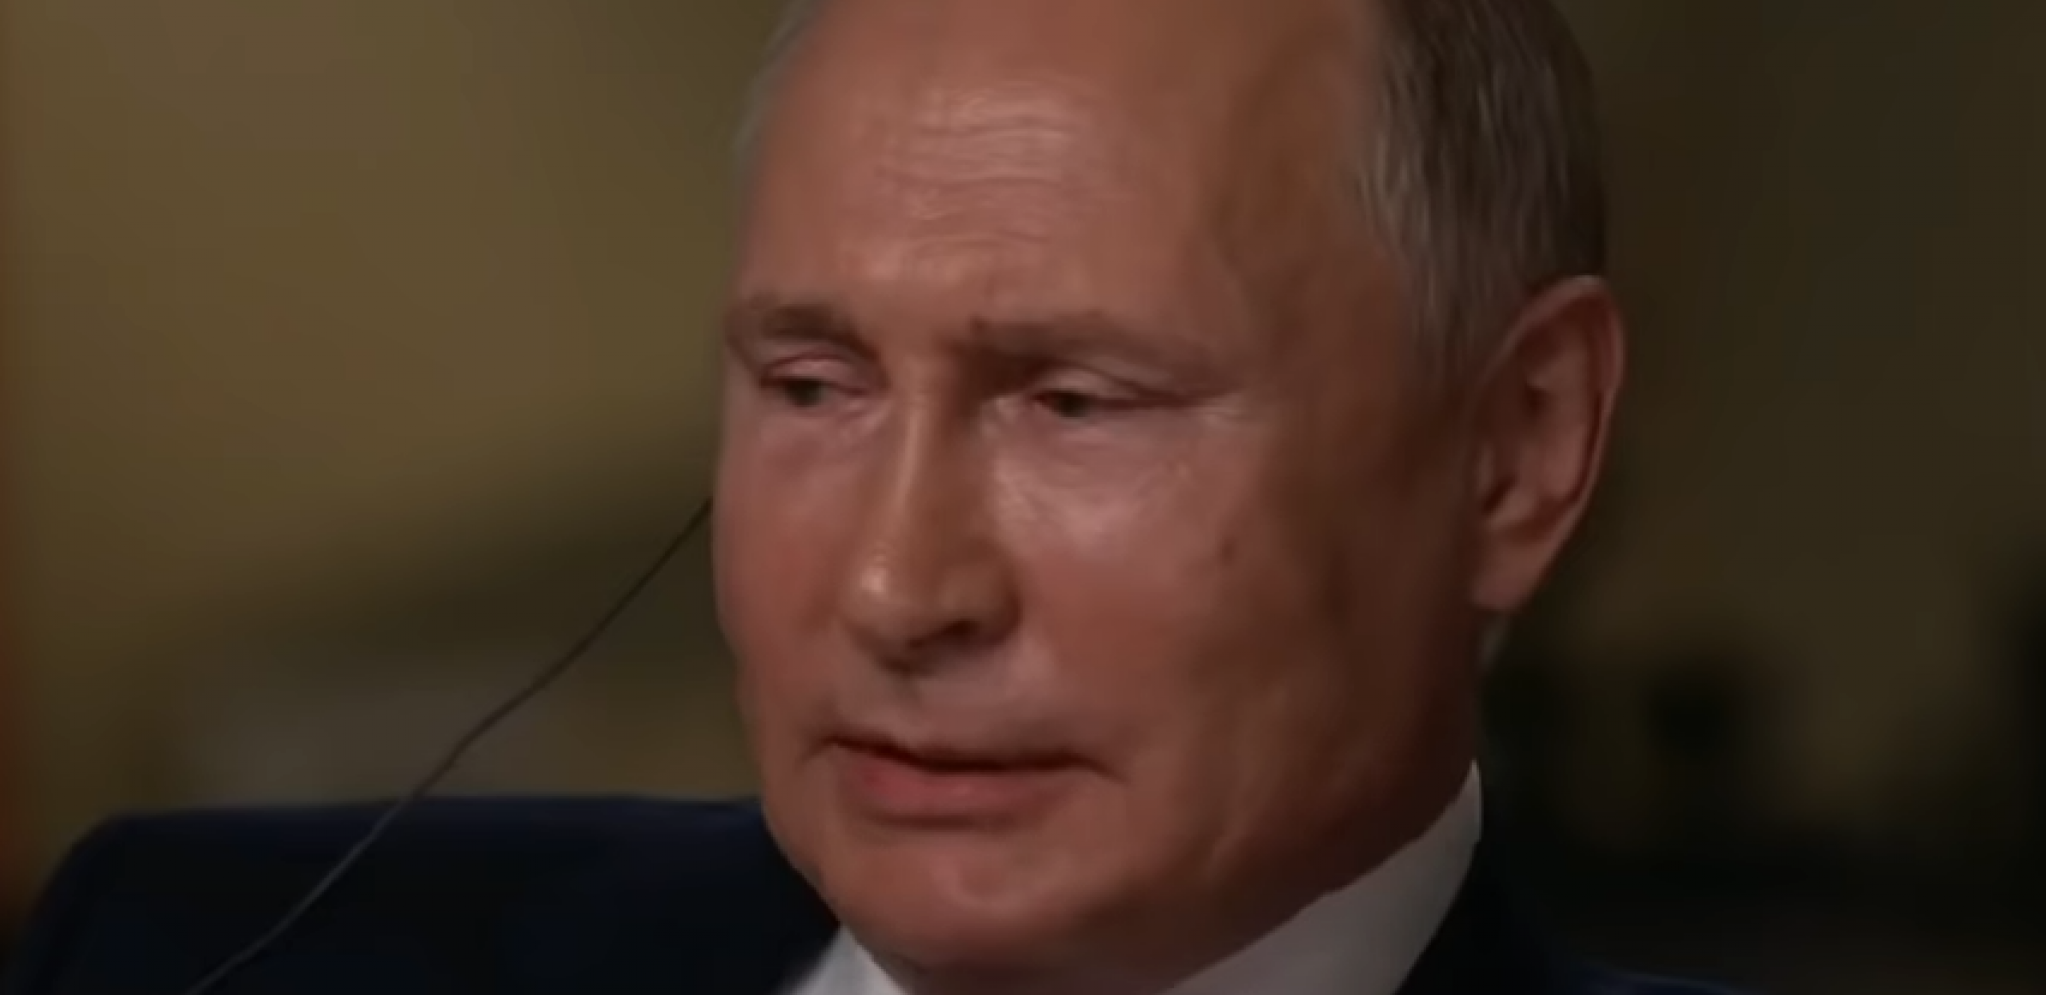 INTERVJU VEKA Putin otvorio dušu američkim medijima, evo šta misli o Bajdenu, Trampu, Navaljnom... (VIDEO)